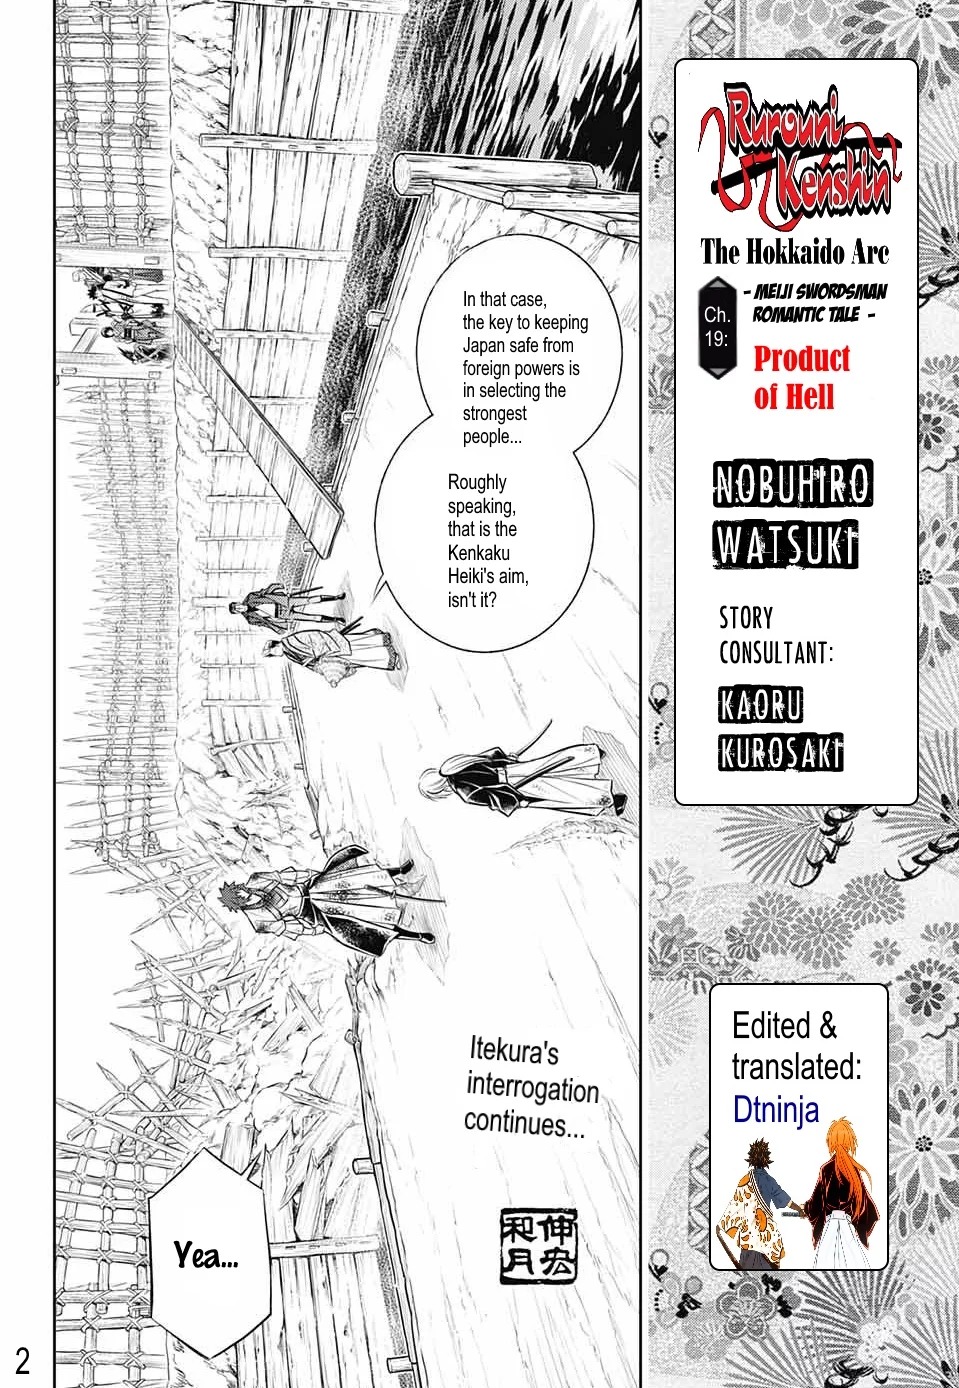 Rurouni Kenshin: Hokkaido Arc ch.19